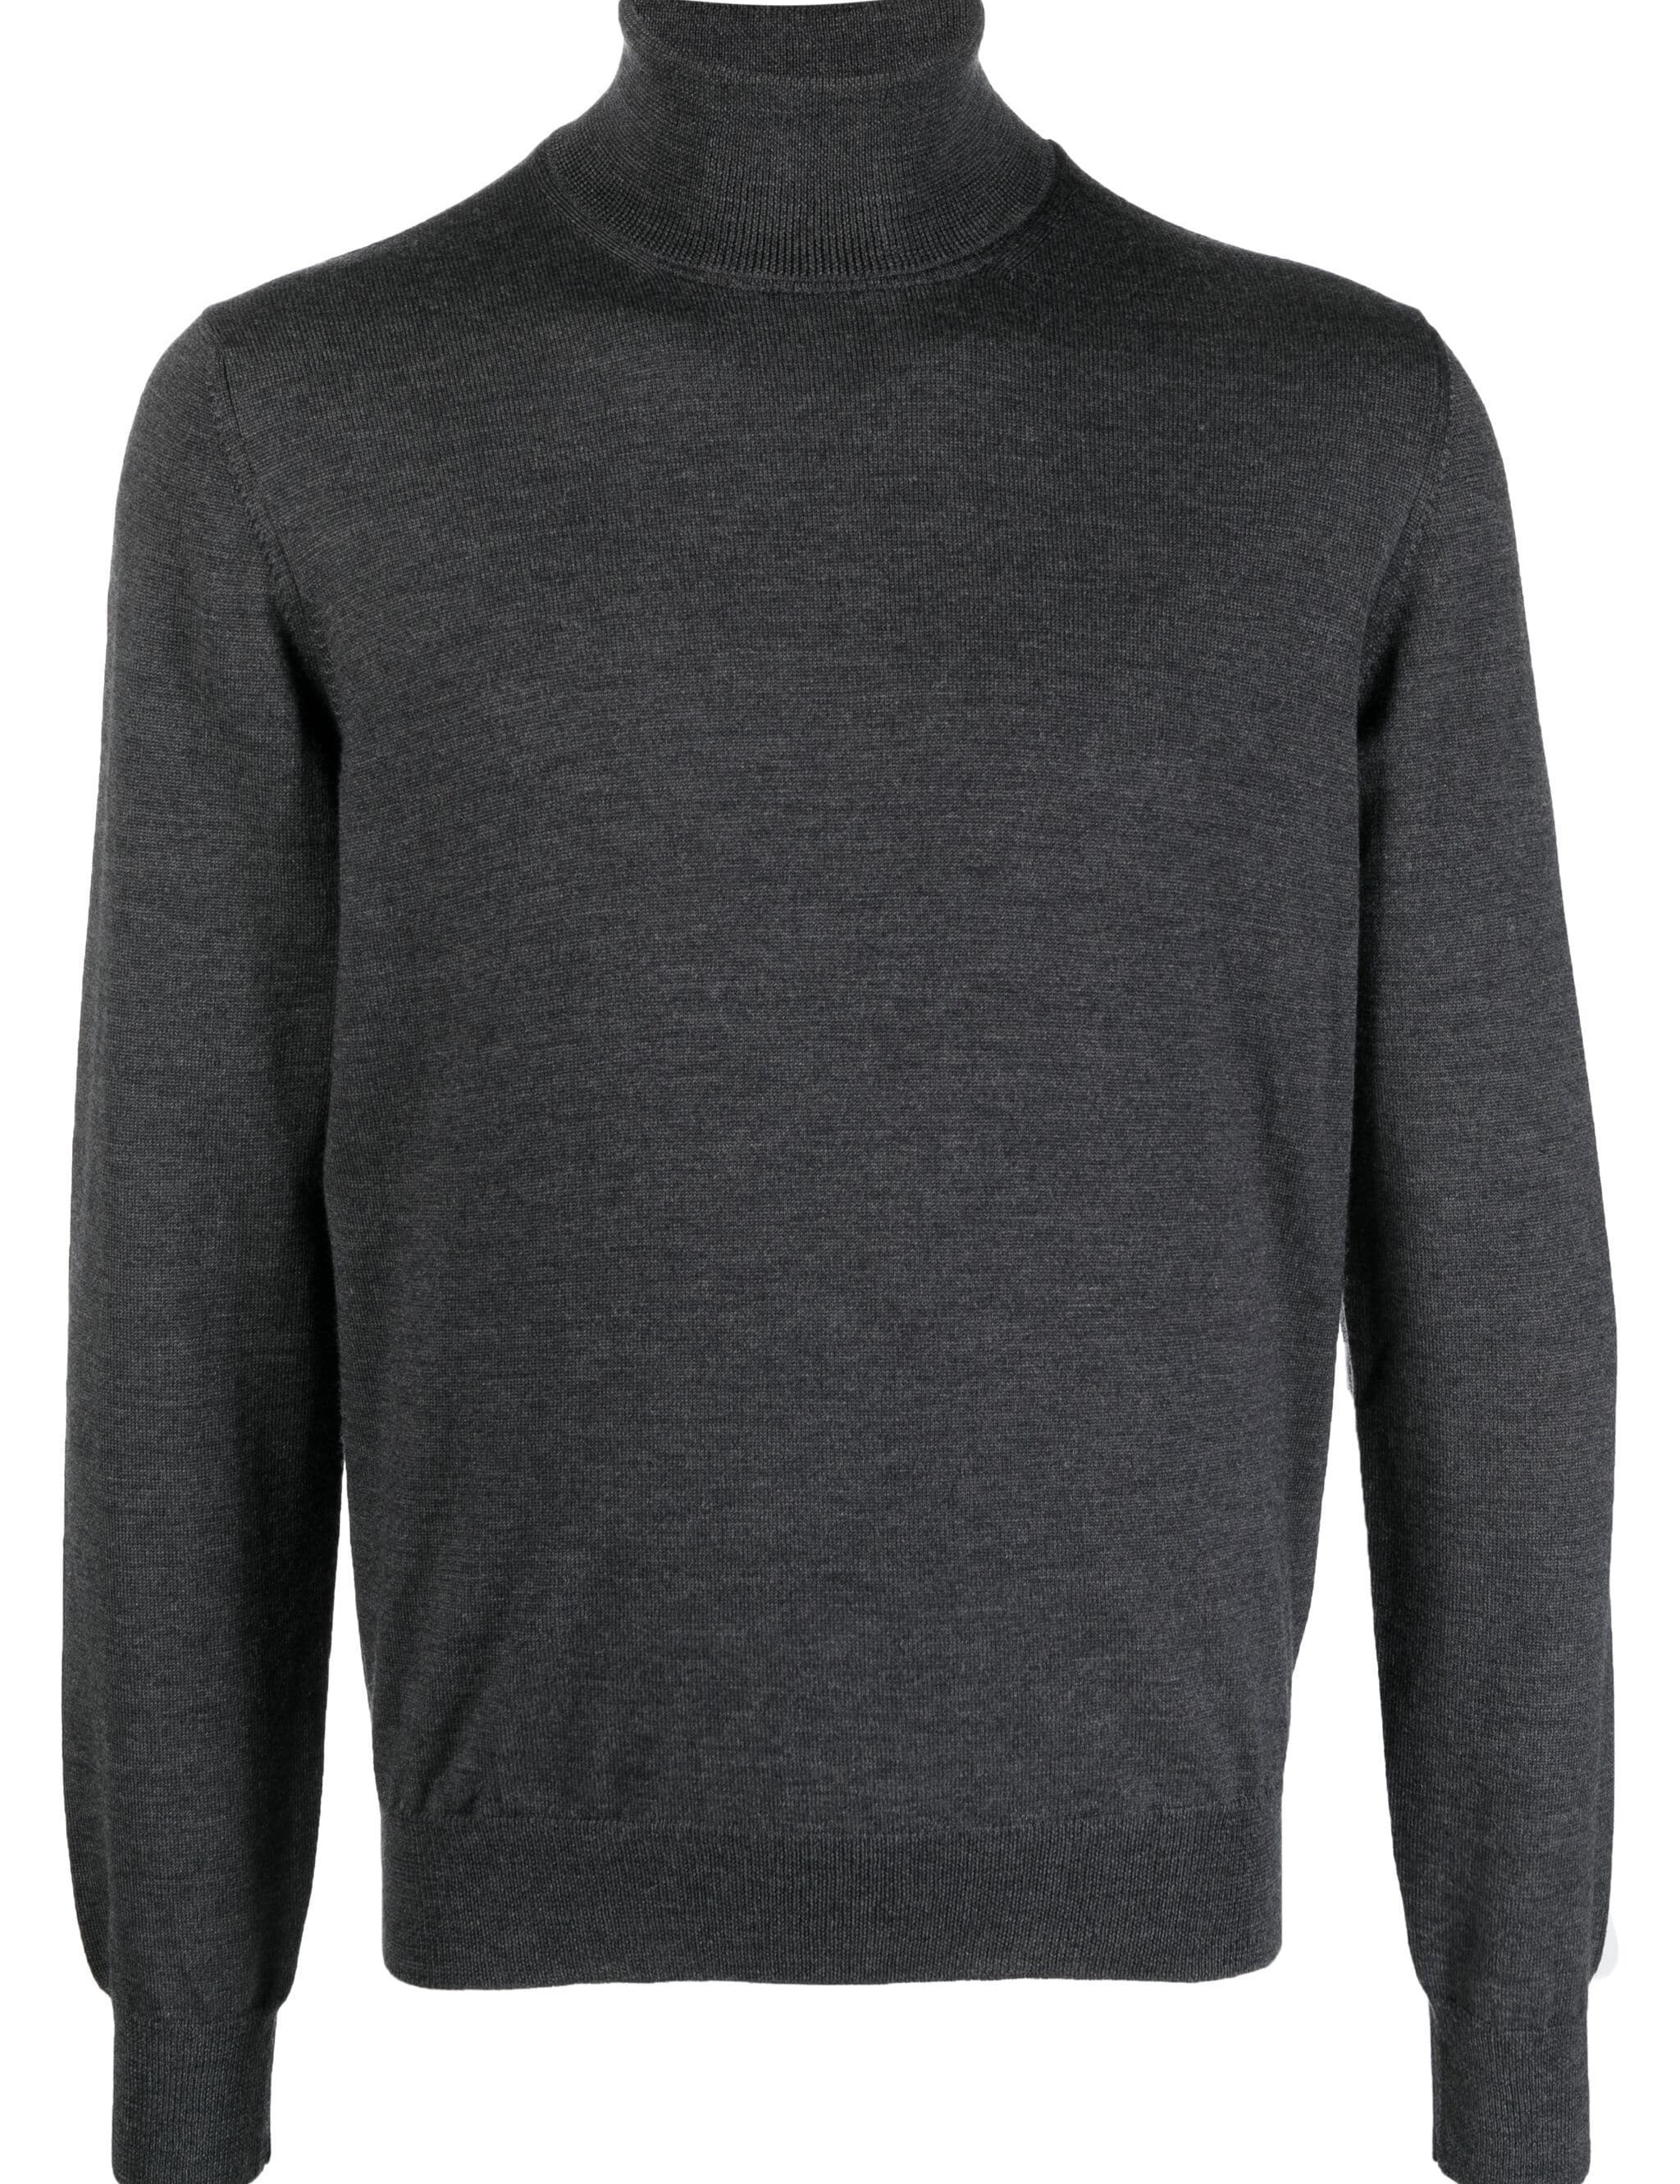 turtleneck-sweater_11423fd1-715c-4e0d-99ee-fa1643ba0cd0.jpg